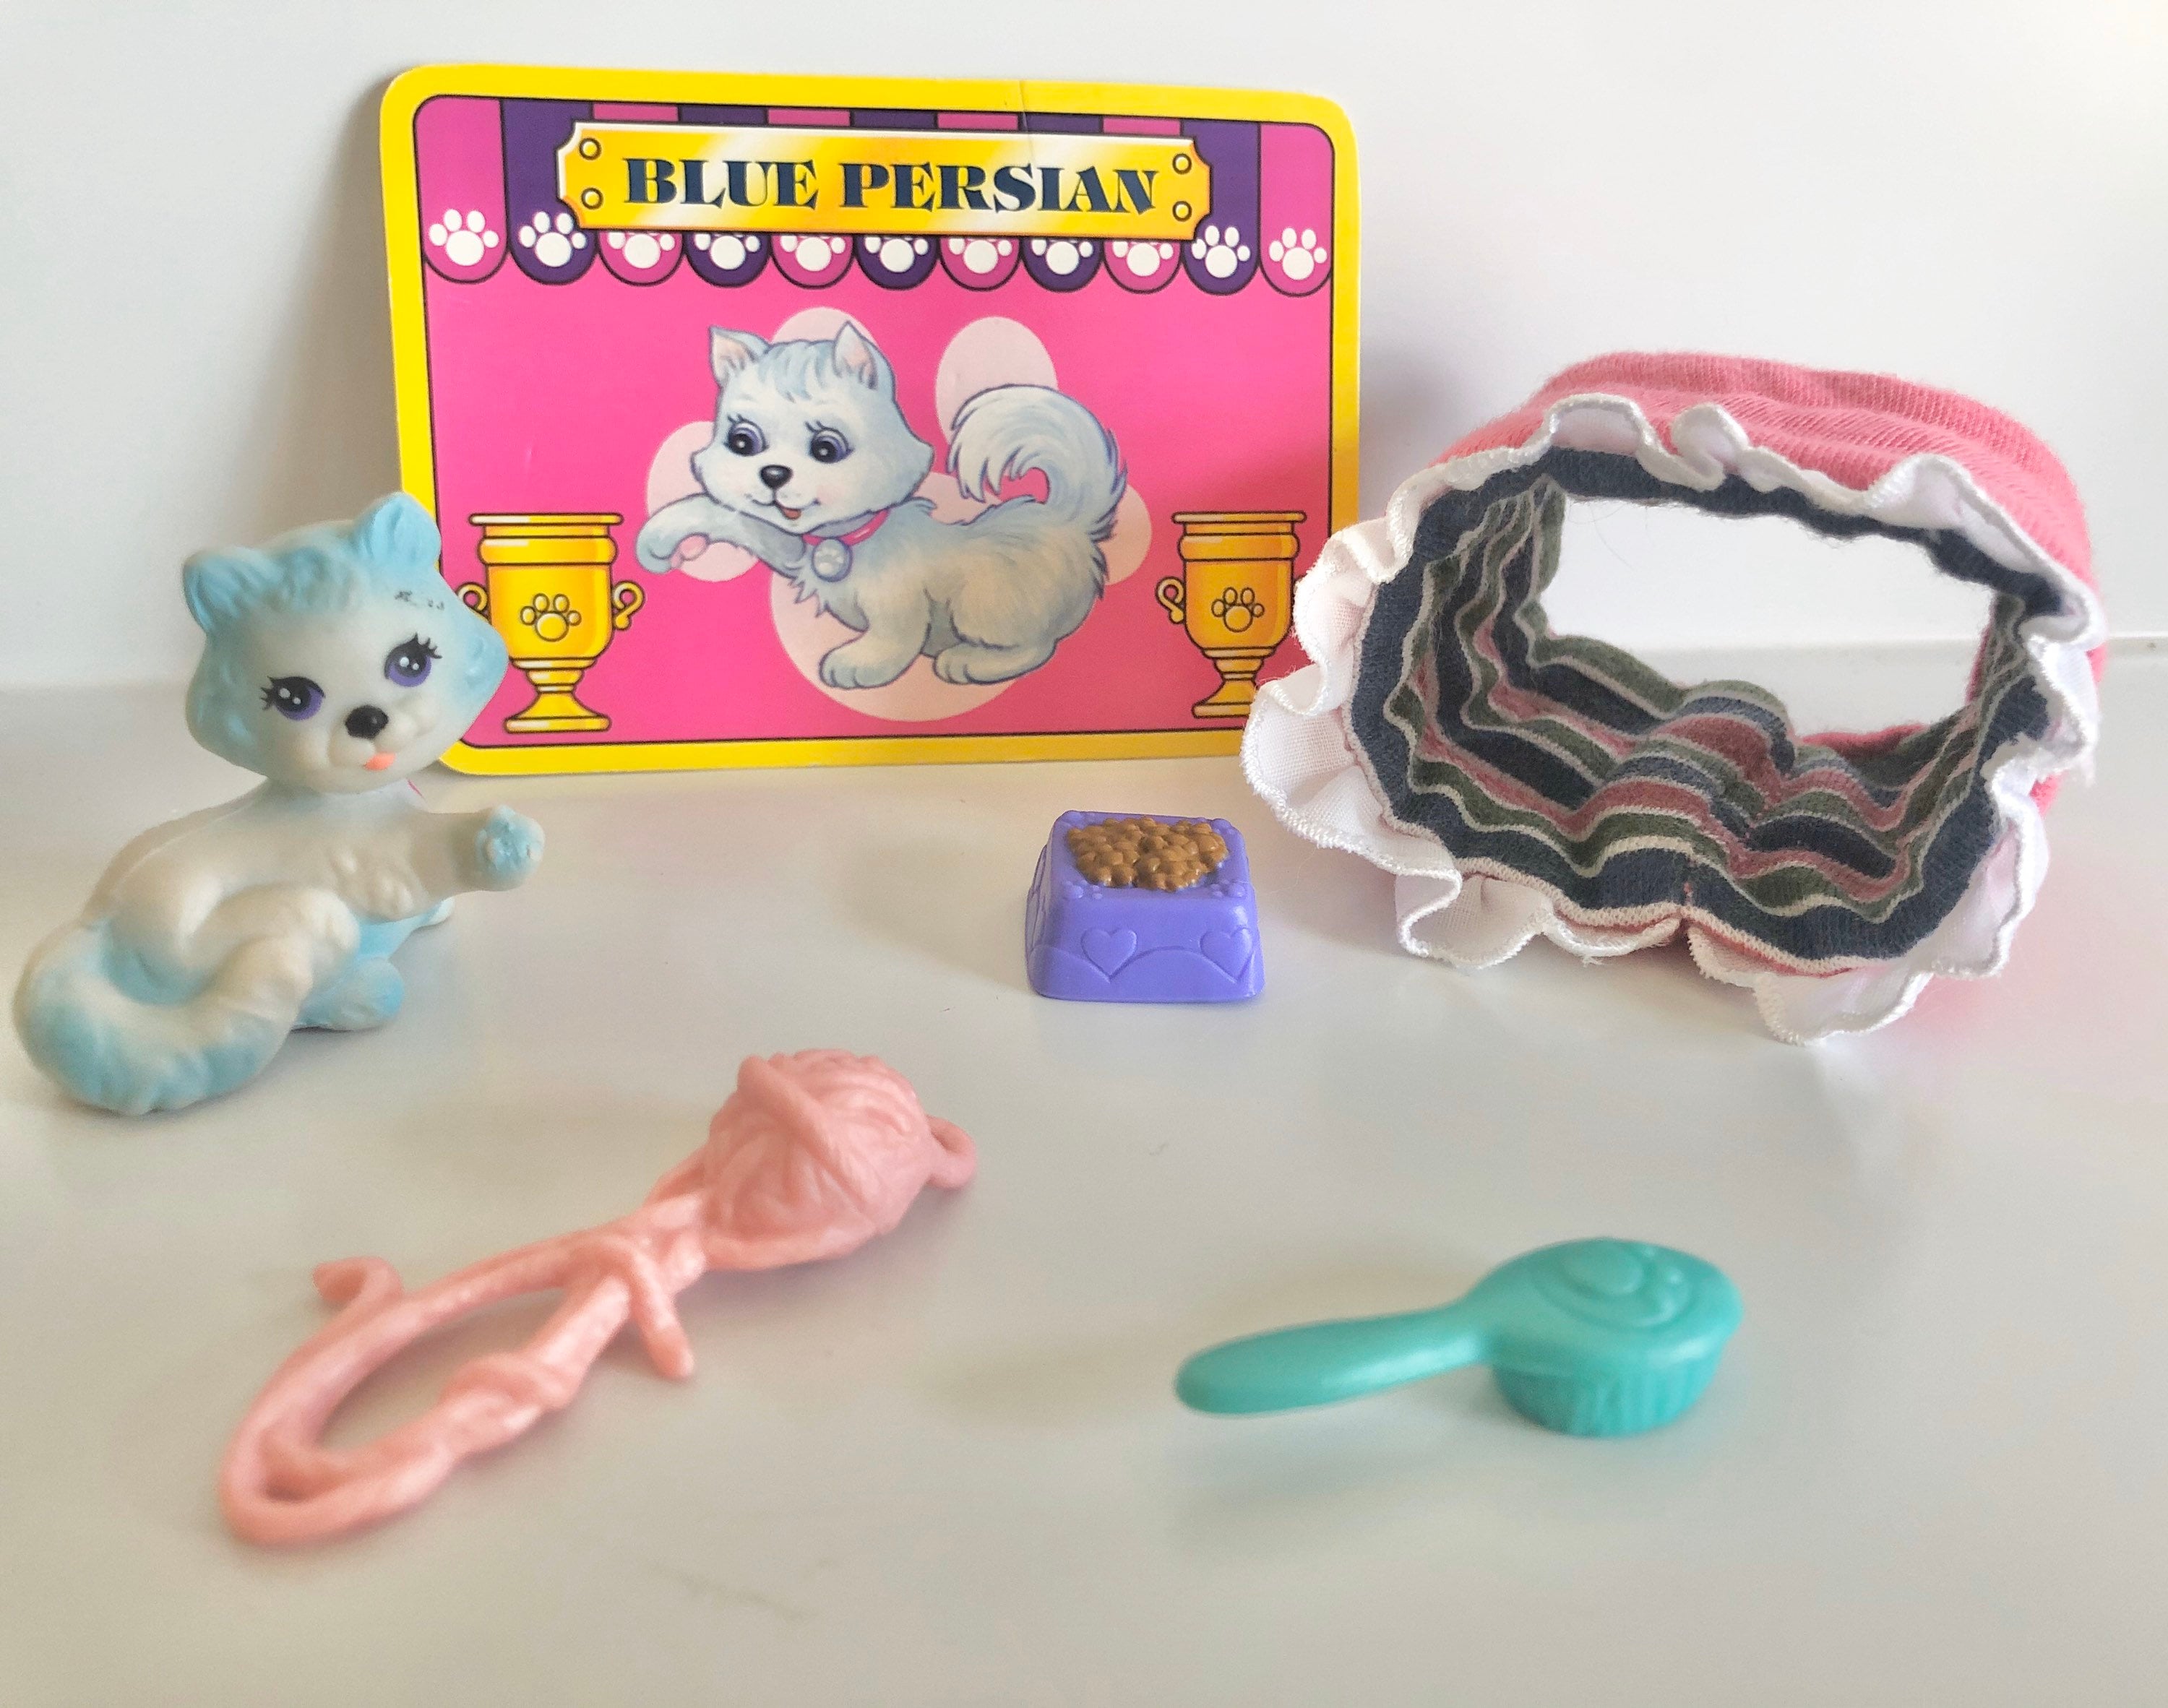 Vintage Littlest Pet Shop Blue Persian Set Kenner 1990s - Etsy